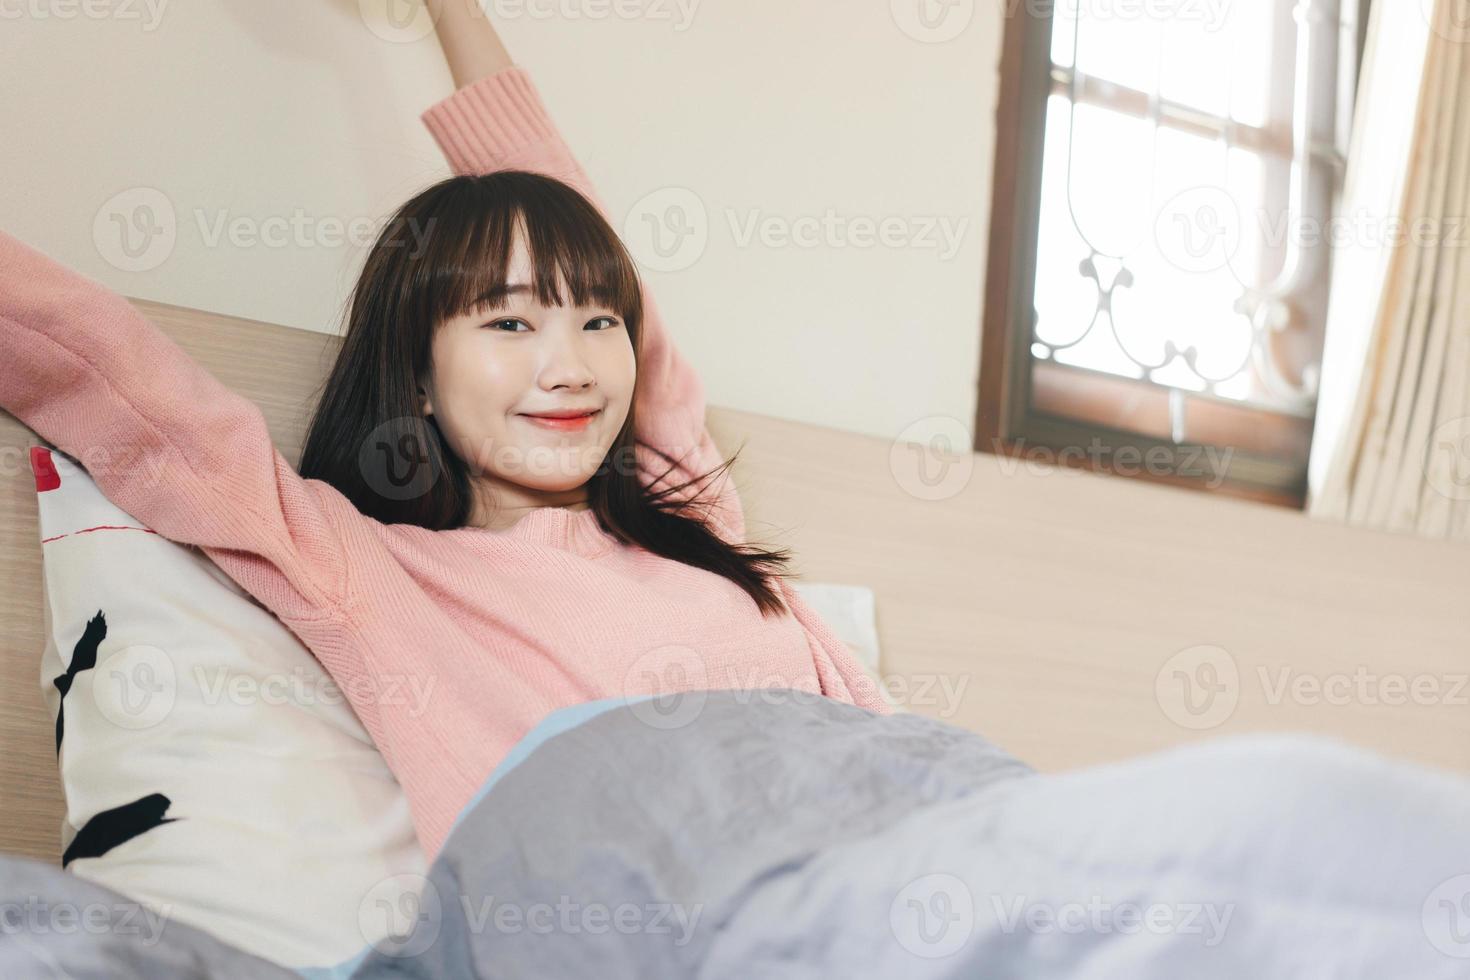 svegliarsi braccio allungato donna asiatica adolescente in camera da letto. foto